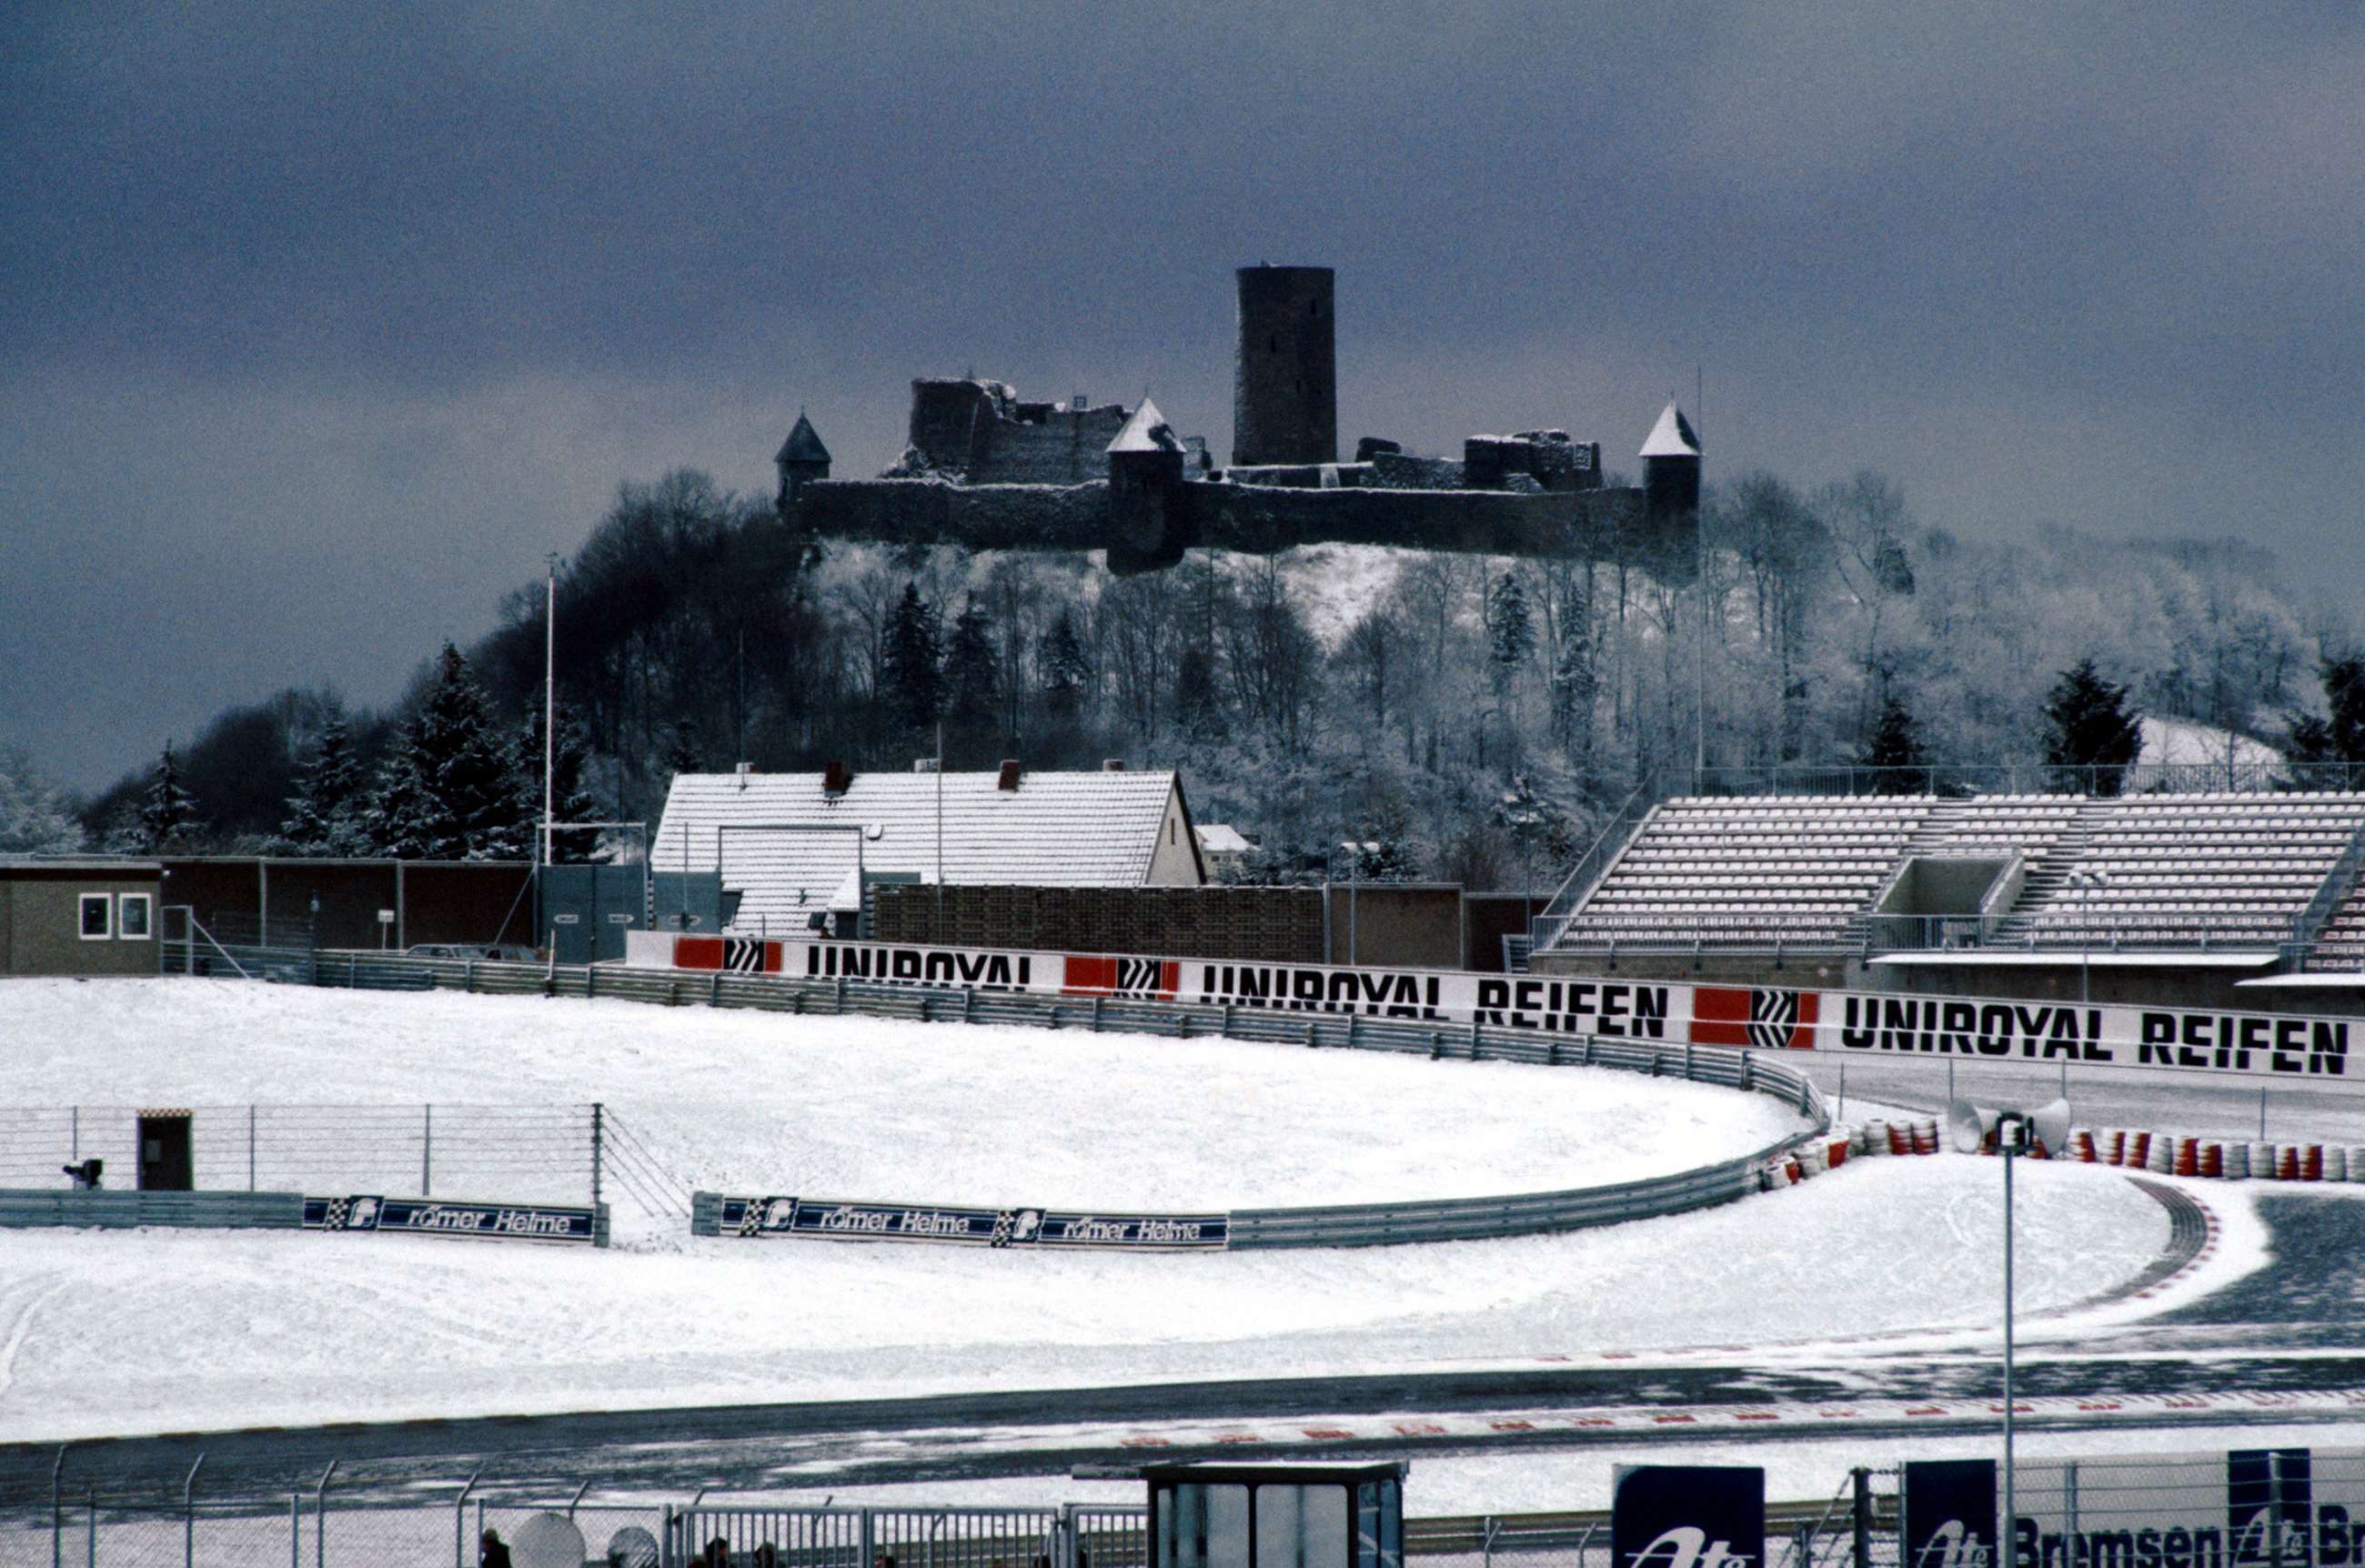 weather-cancelled-motorsport-f3000-1985-nurburgring-motorsport-images-goodwood-12112019.jpg